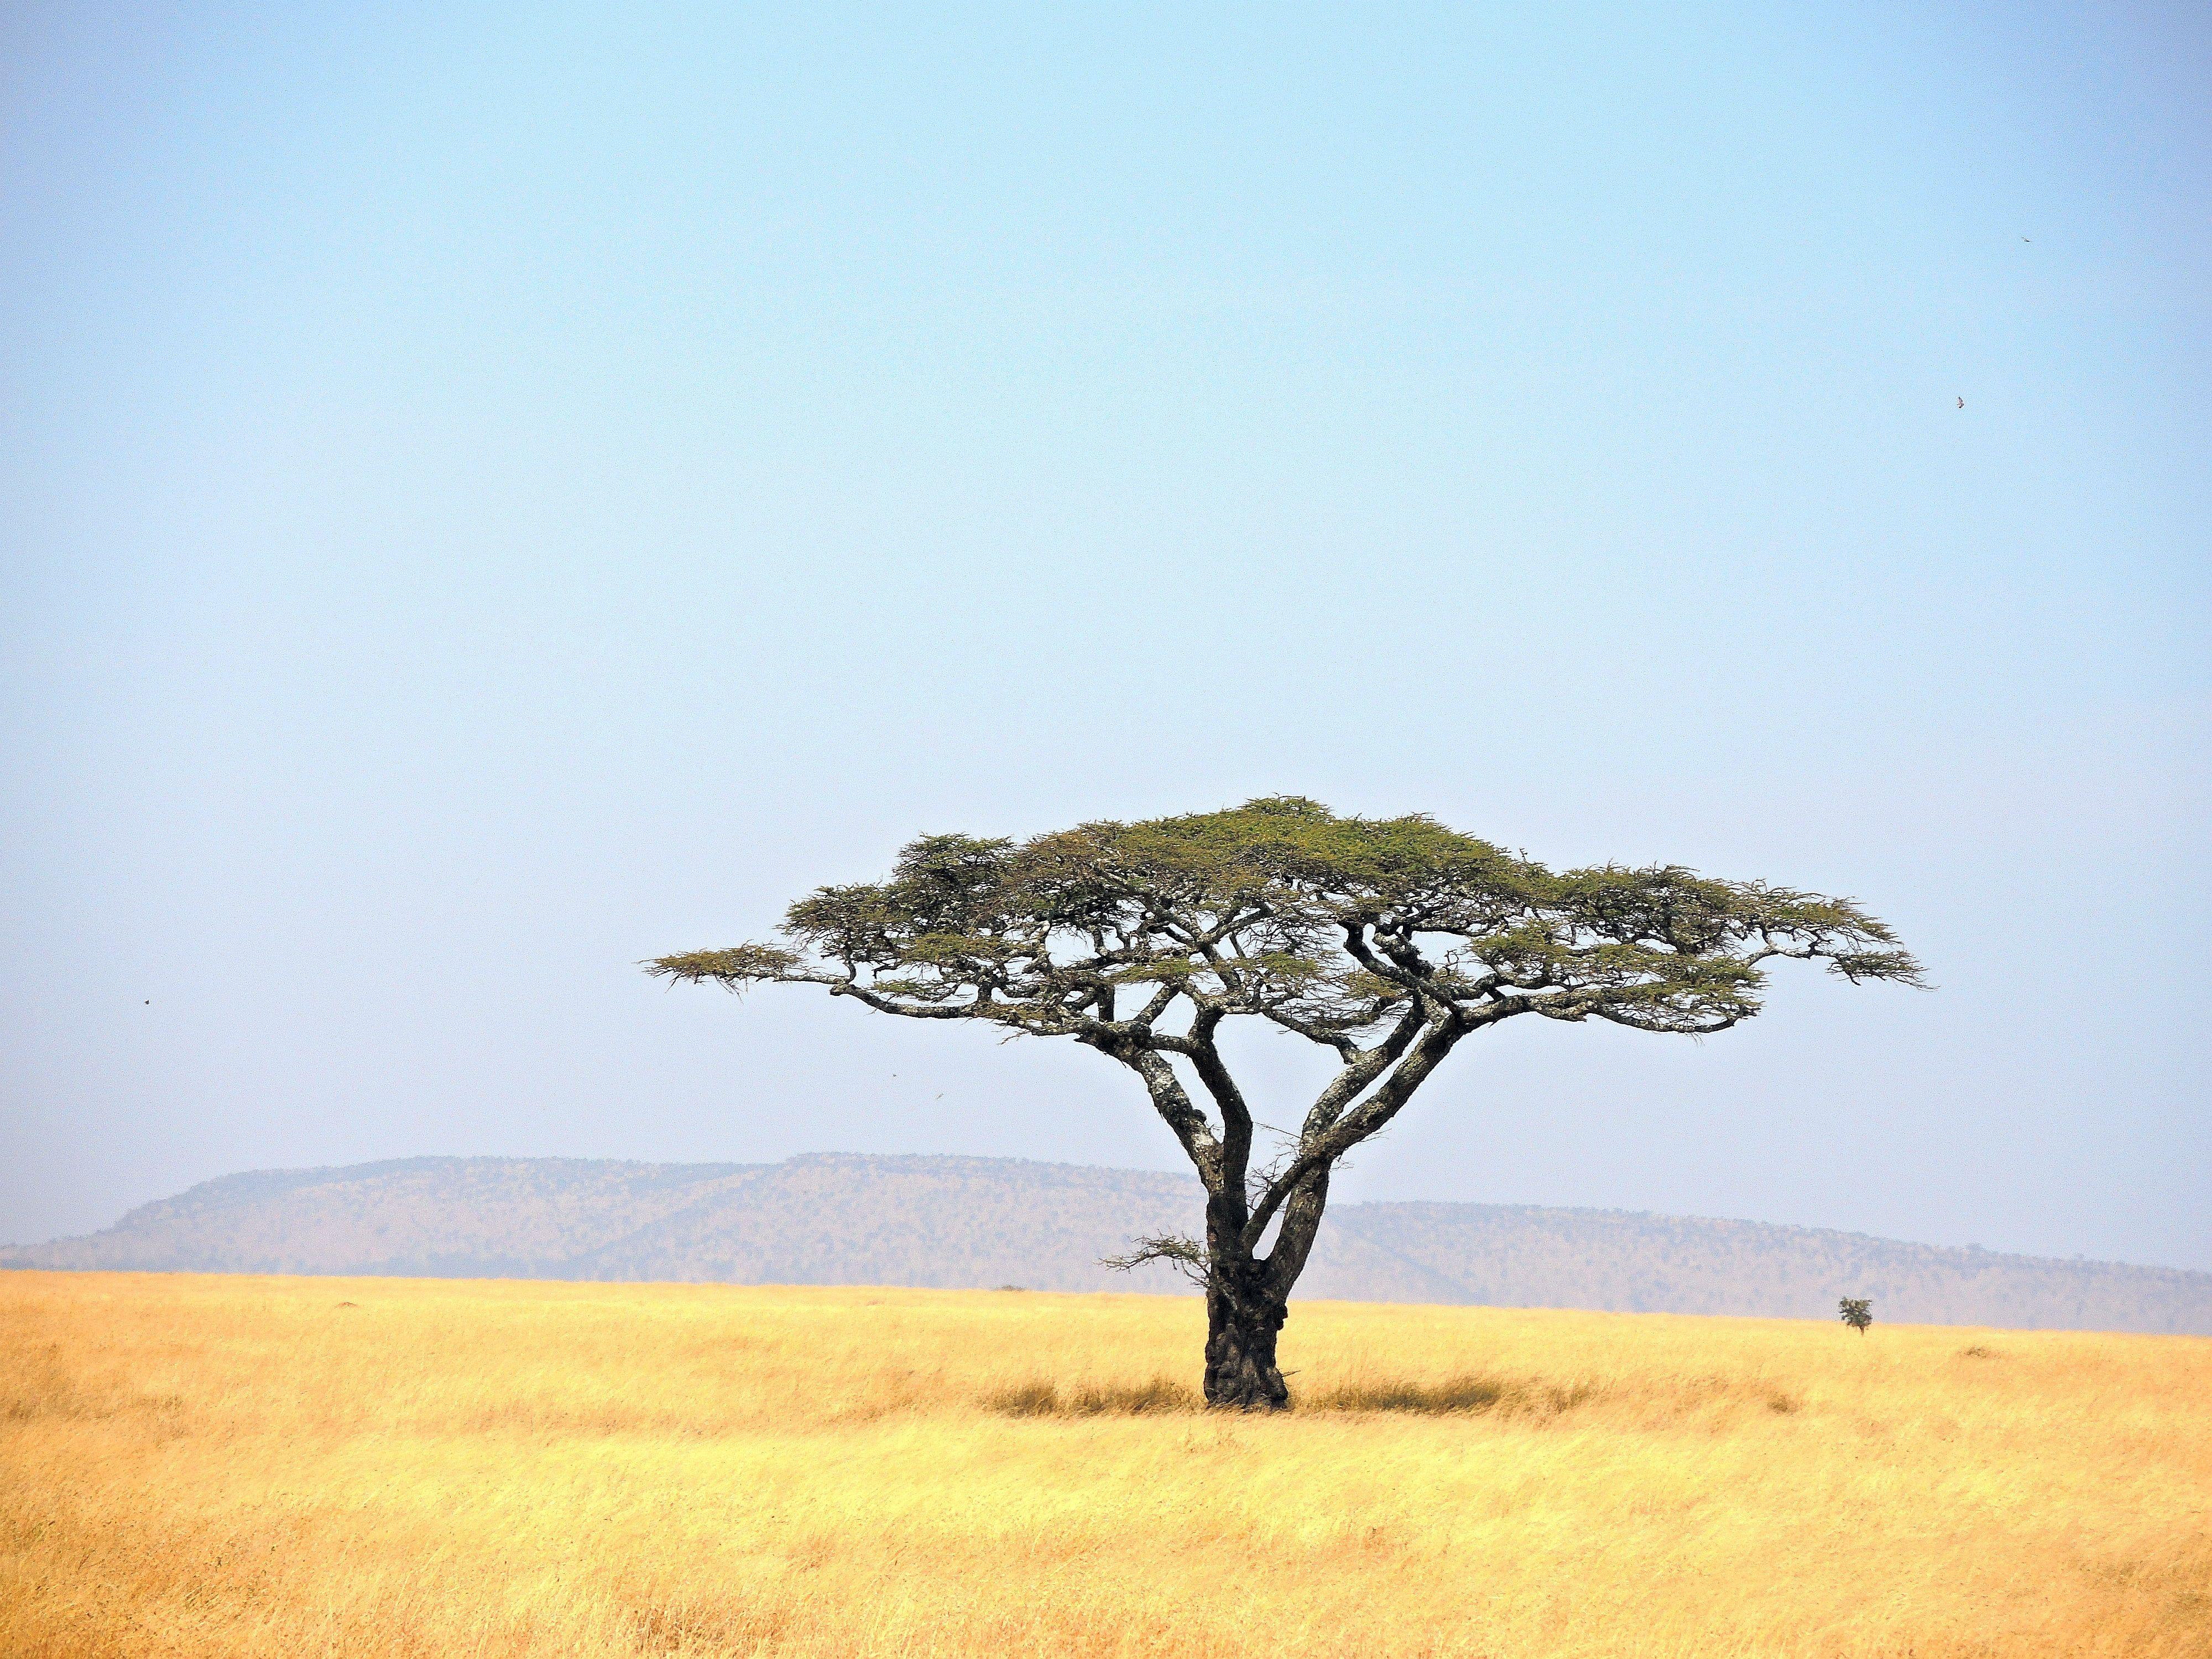 Green leaf tree in grass field, tanzania, serengeti national park